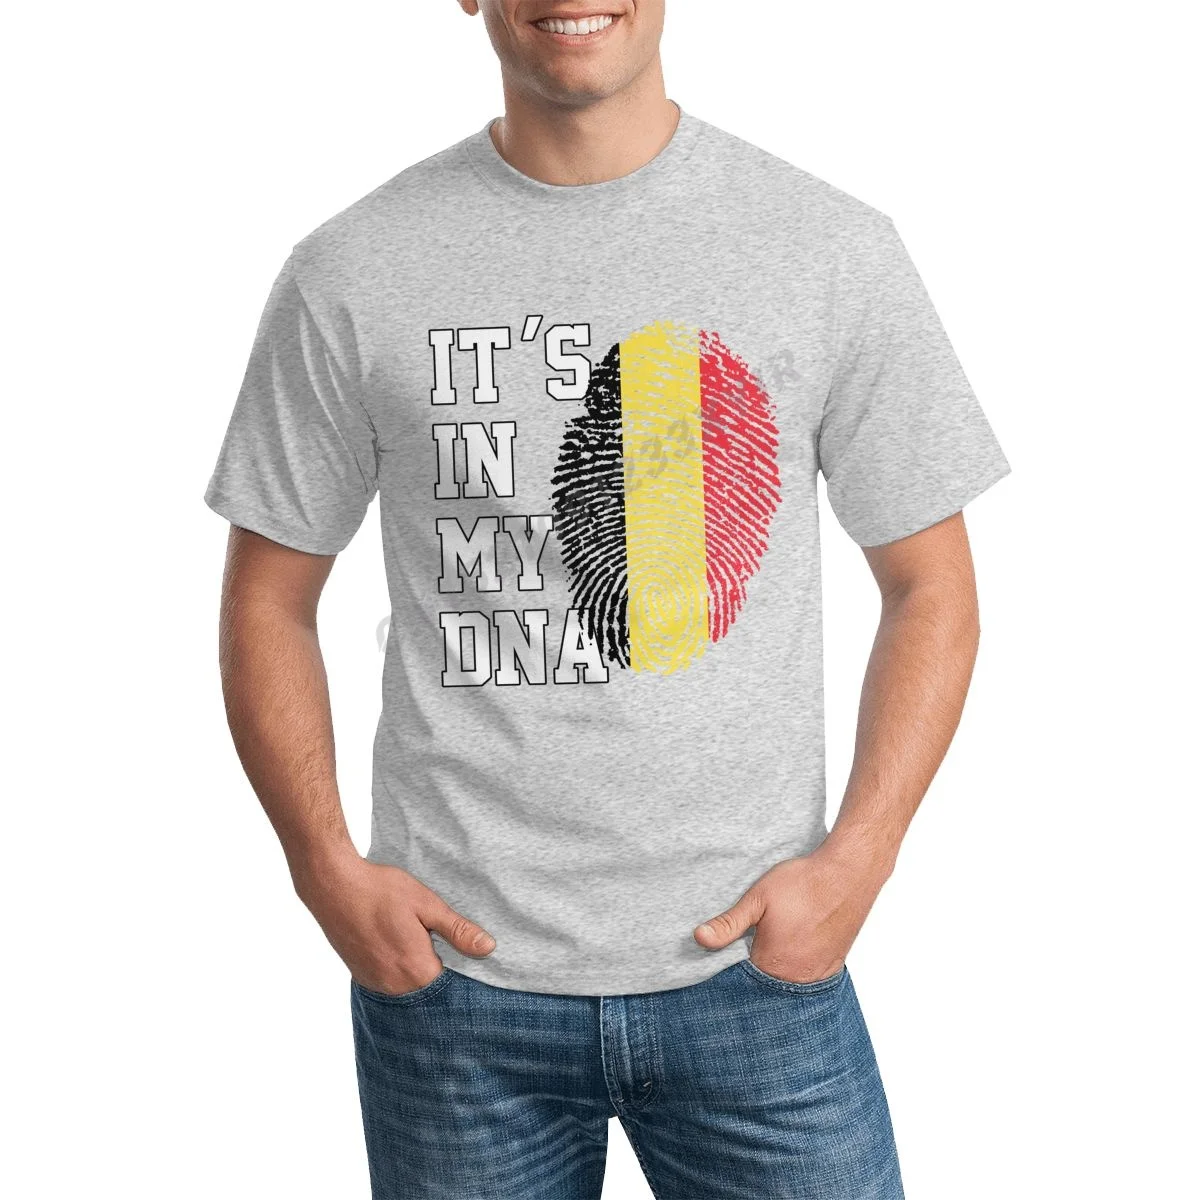 

Мужская футболка с надписью «It IN MY DNA», с флагом Бельгии, для фанатов Бельгии, Мужская футболка, футболка в стиле хип-хоп, искусственная 100% хло...